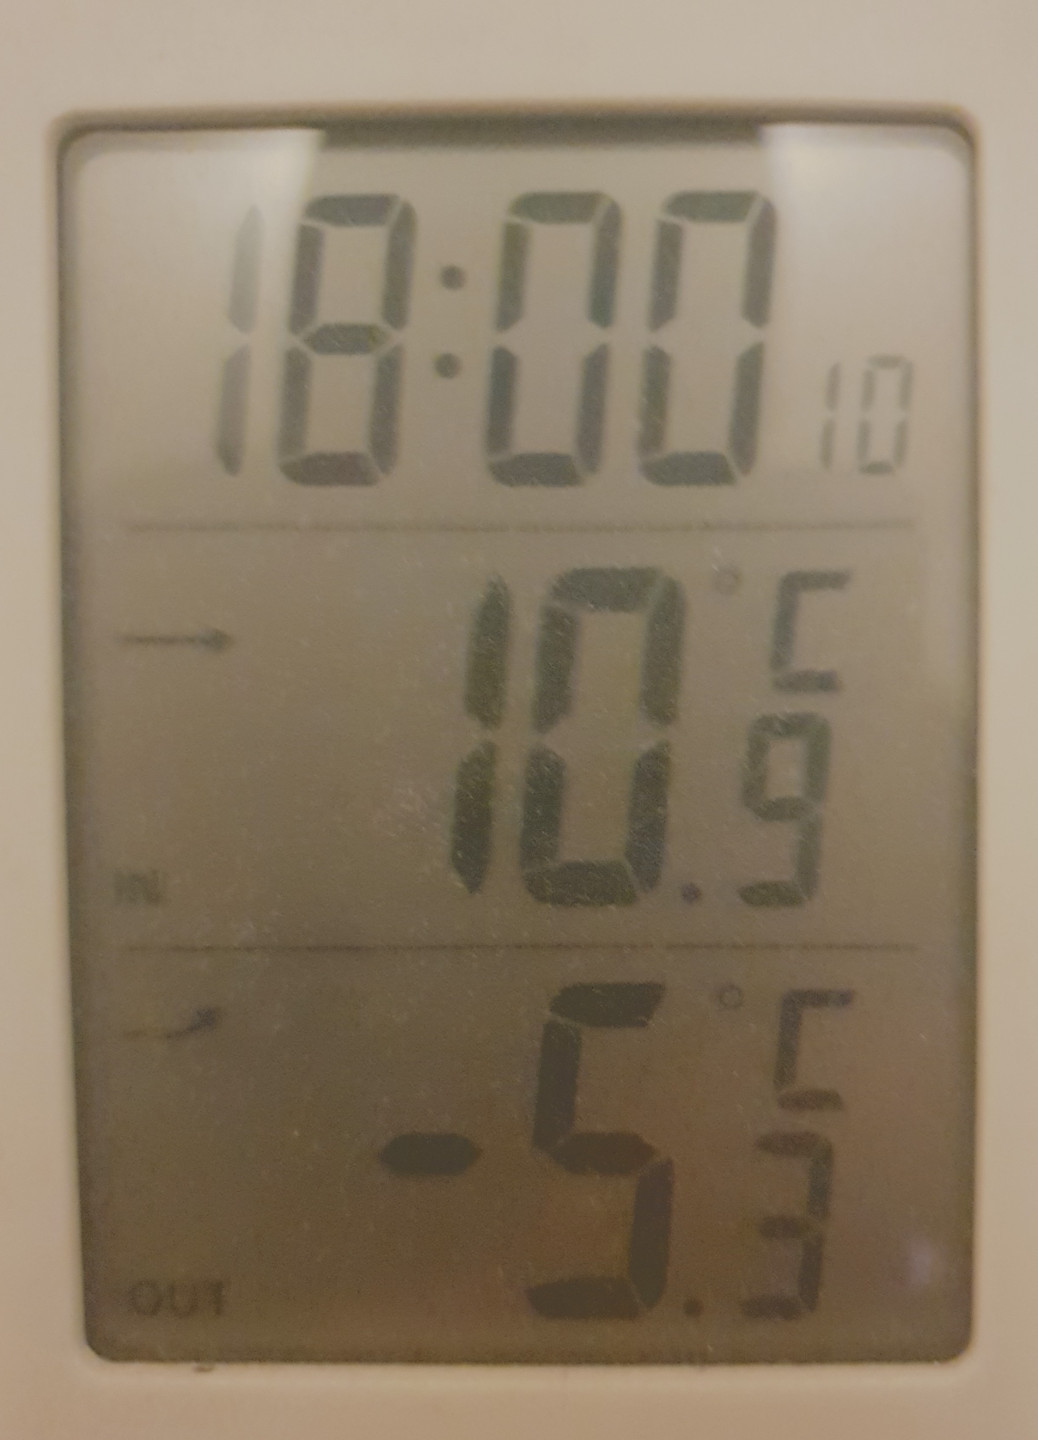 Termometr wskazujący temperaturę wewnątrz domu (10,9 stopni C) i na zewnątrz (-5,3 stopni C)